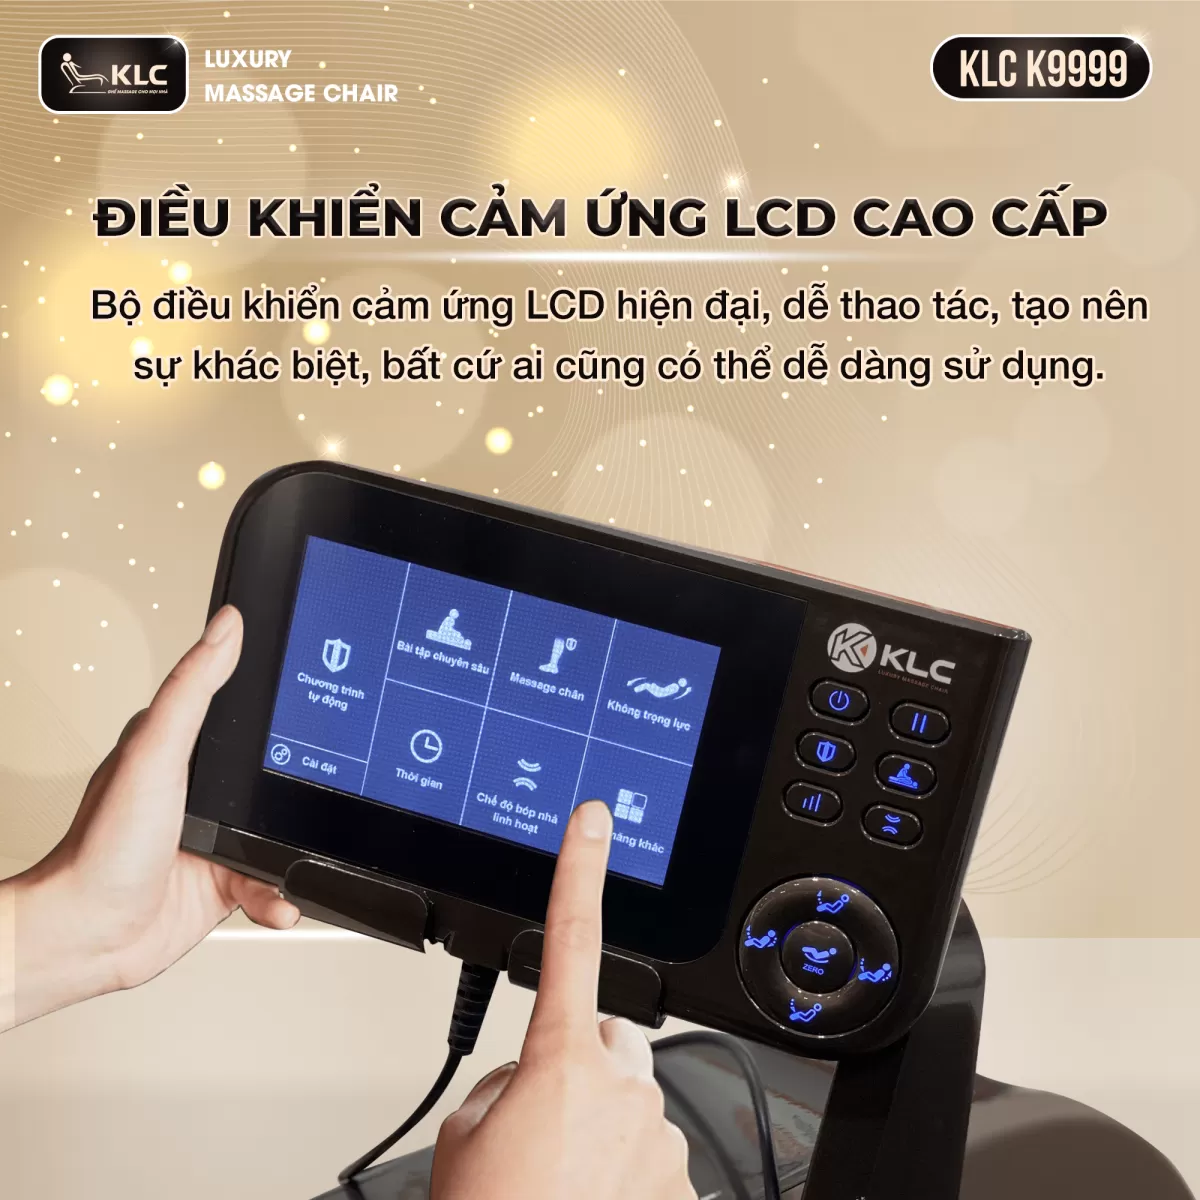 Điều khiển cảm ứng LCD của Ghế Massage KLC K9999